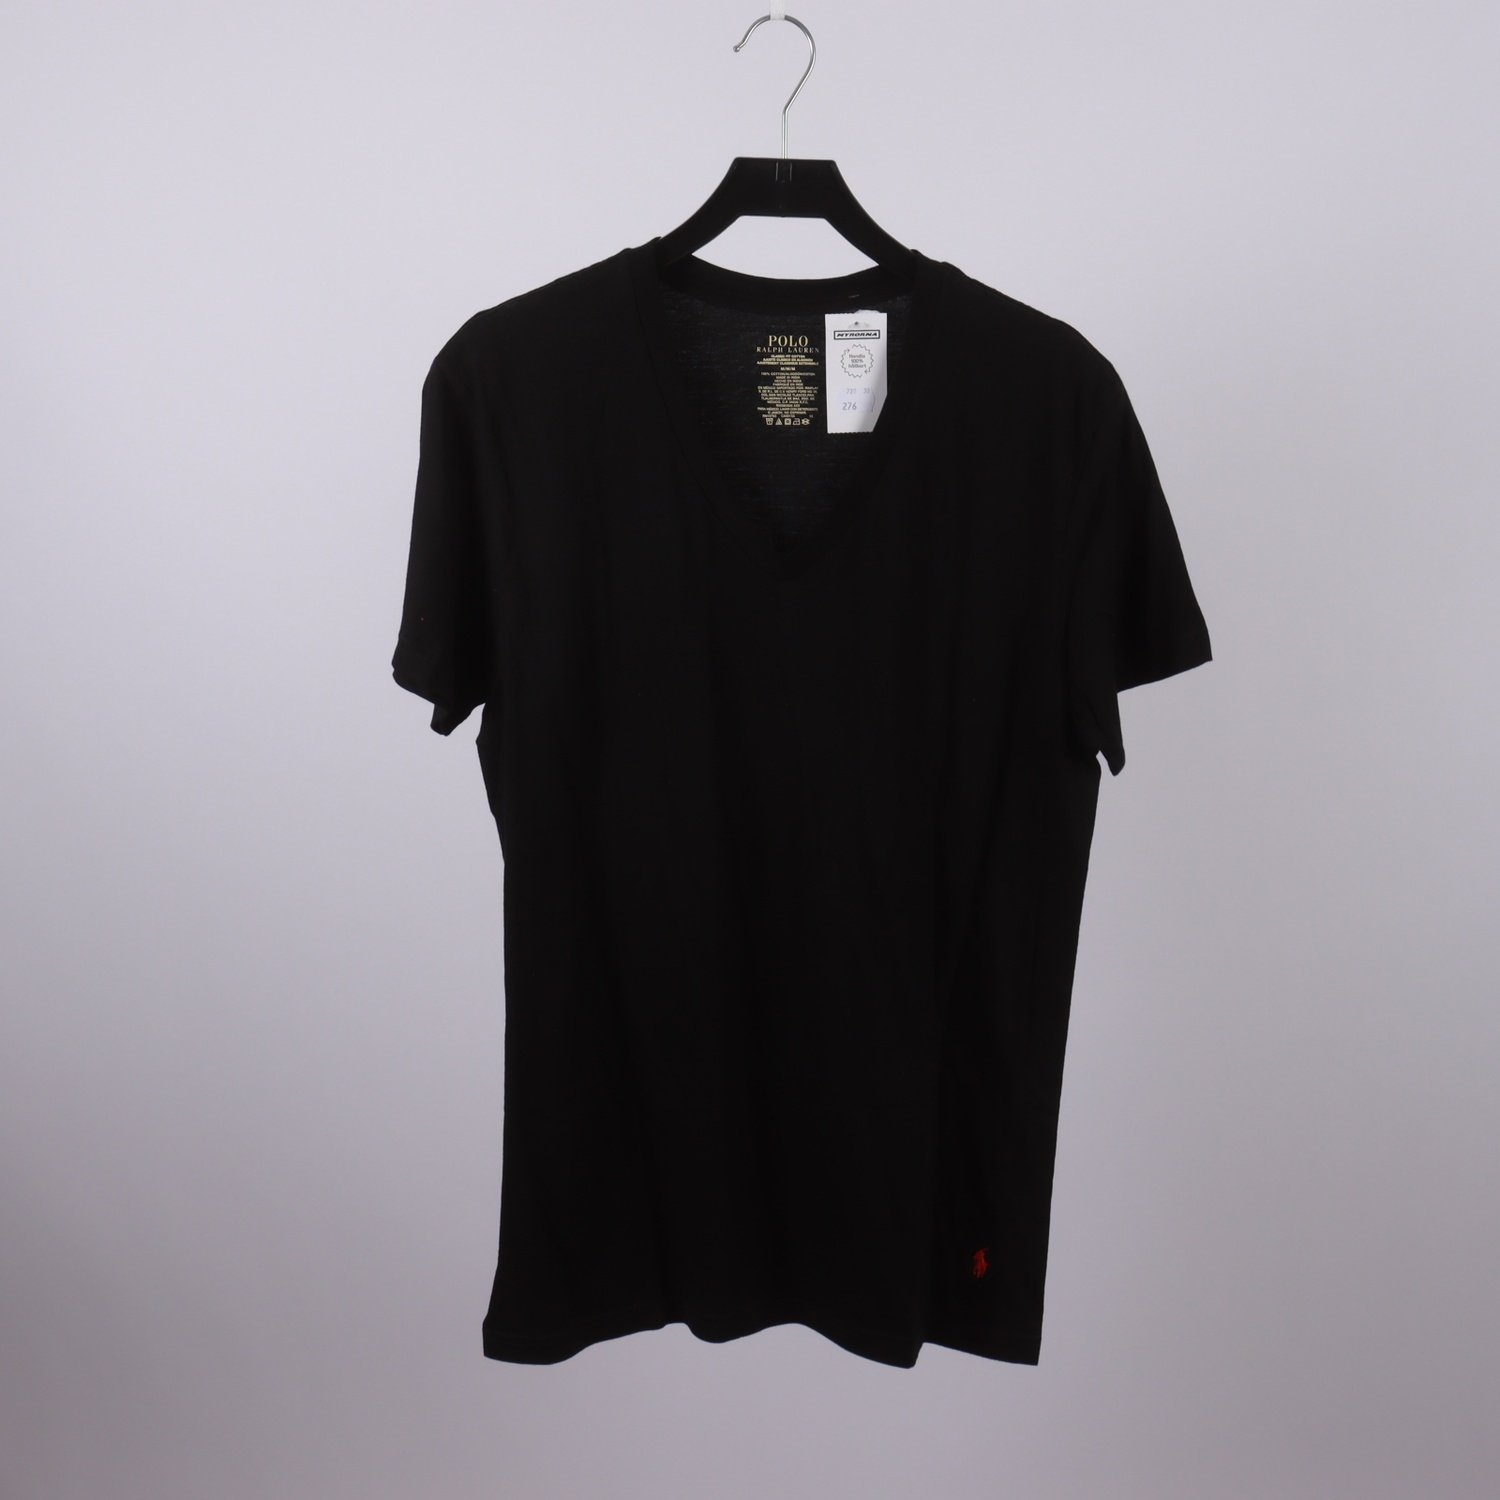 T-shirt, Polo Ralph Lauren, svart, stl. M